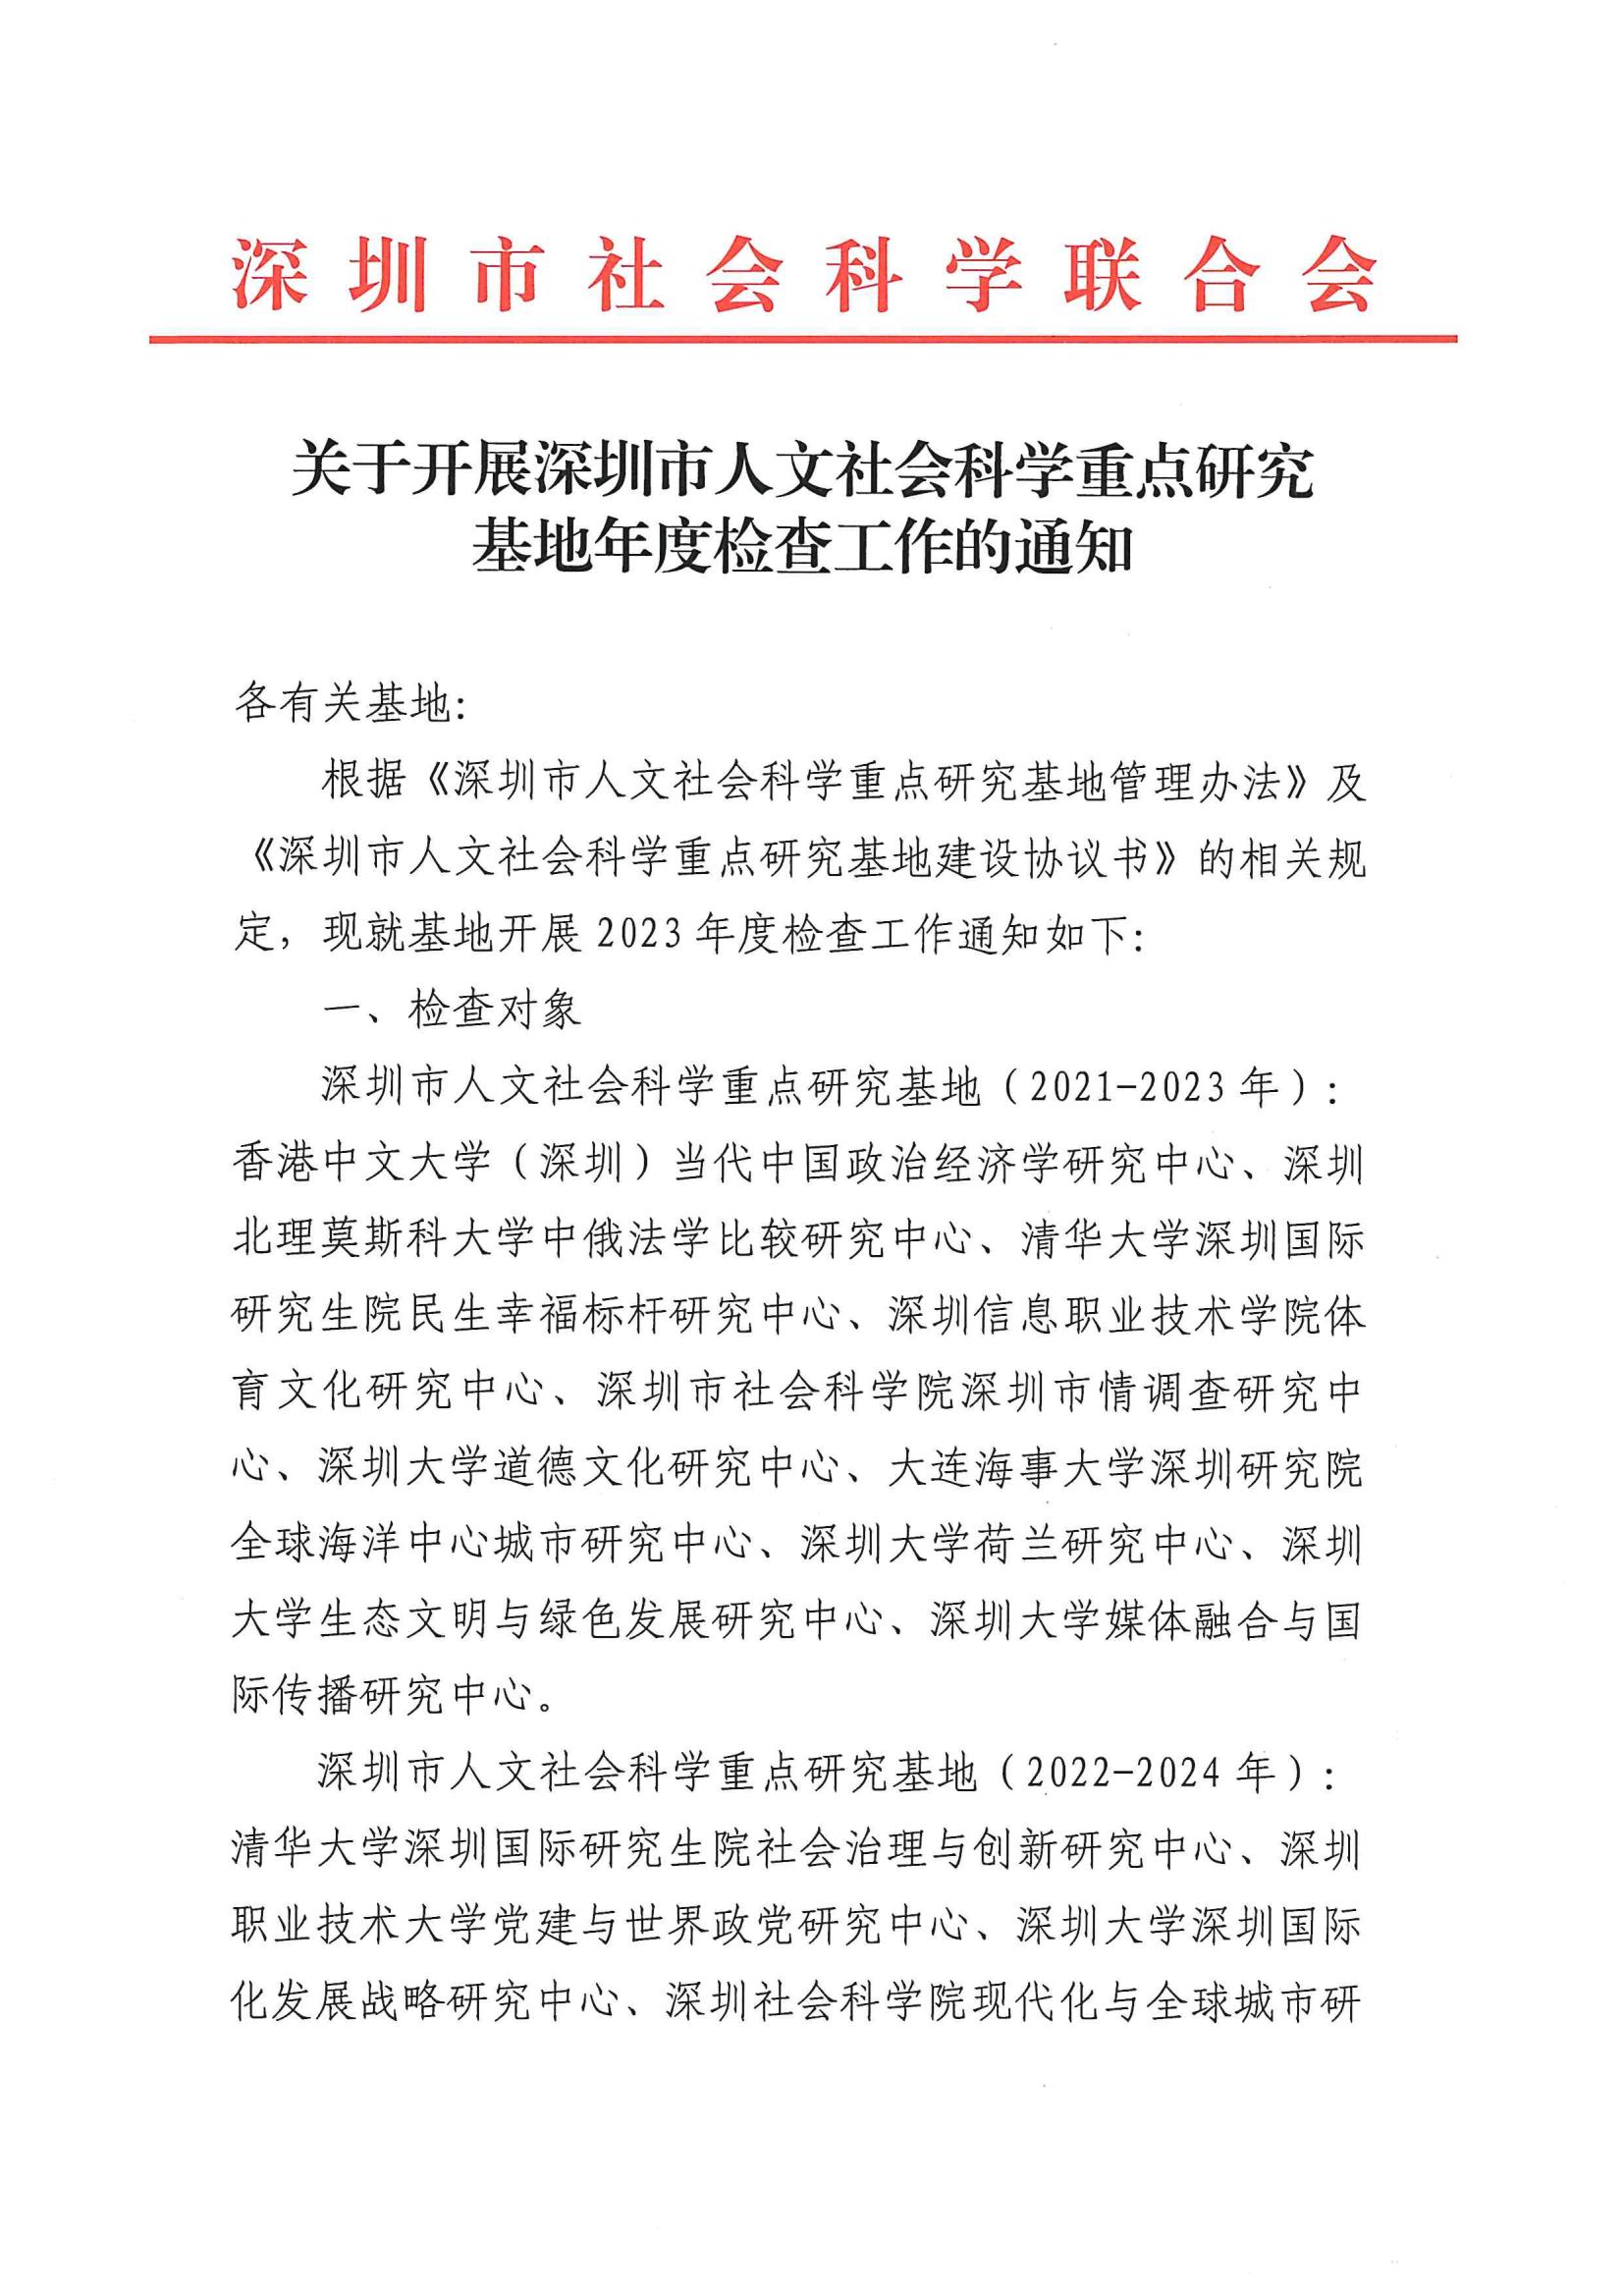 关于开展深圳市人文社会科学重点研究基地年度检查工作的通知_00.jpg